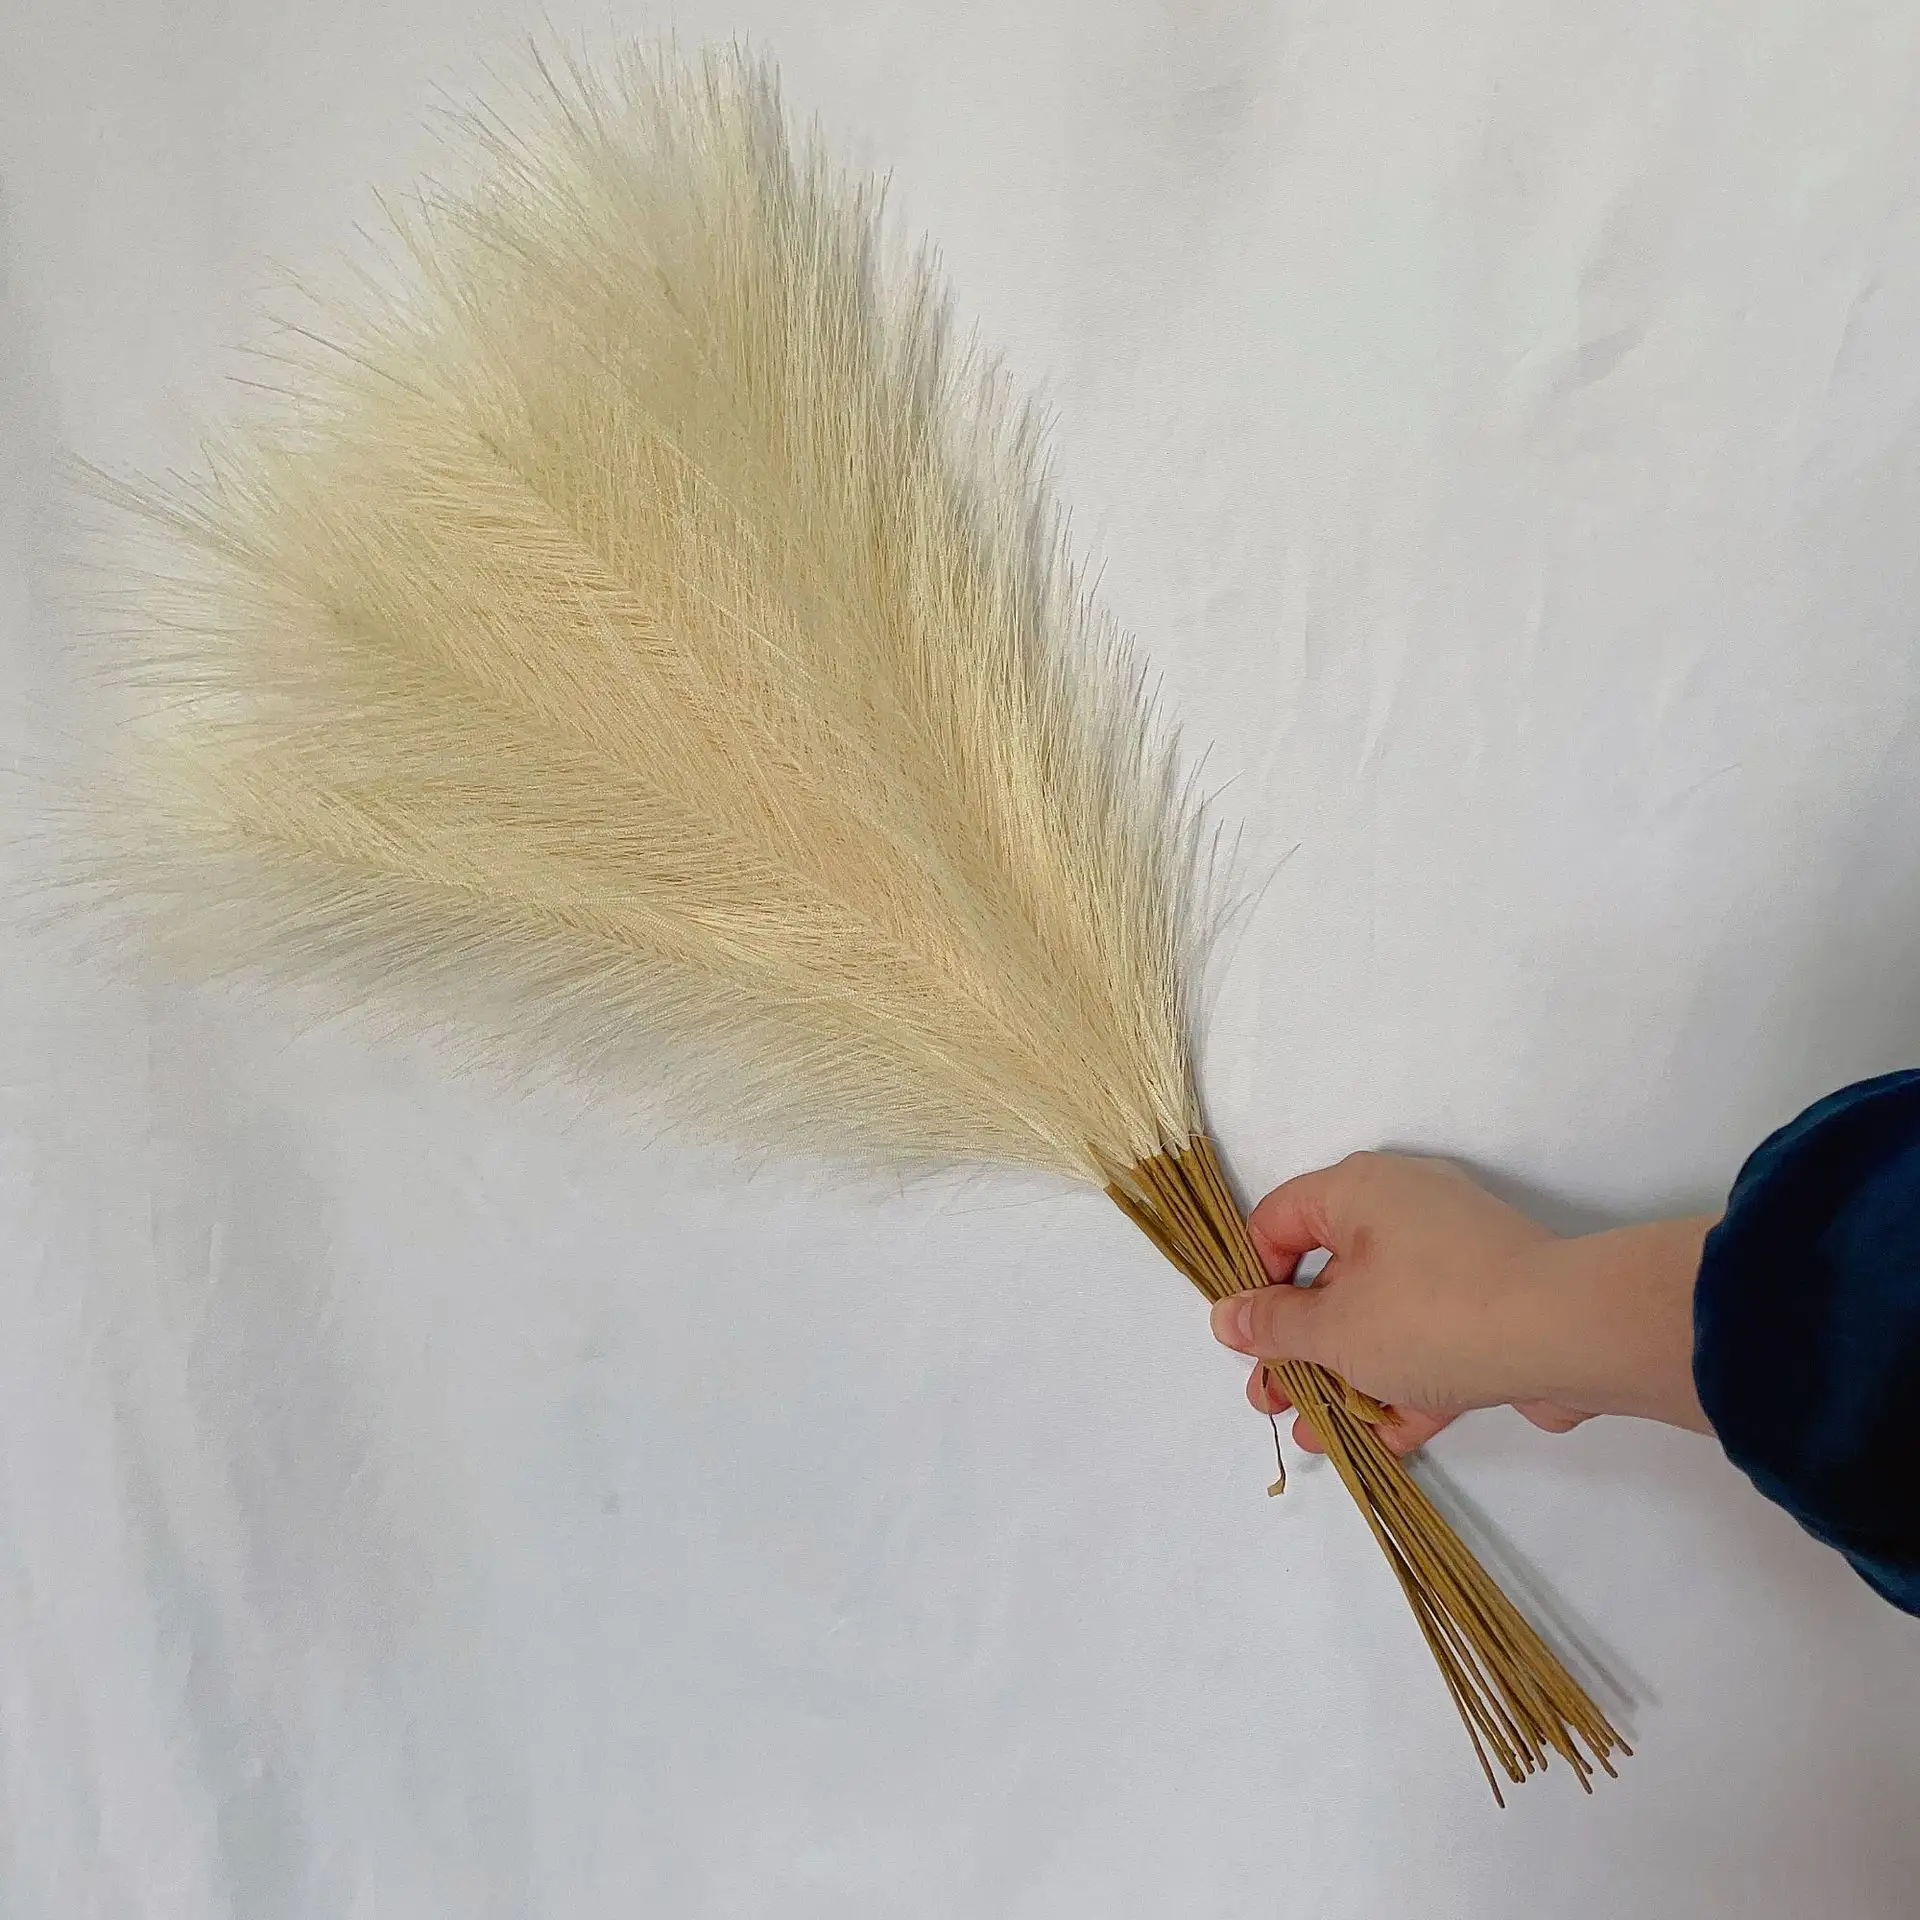 Grosir rumput pampas 55 cm rumput reed buatan untuk dekorasi gaun pesta karnaval